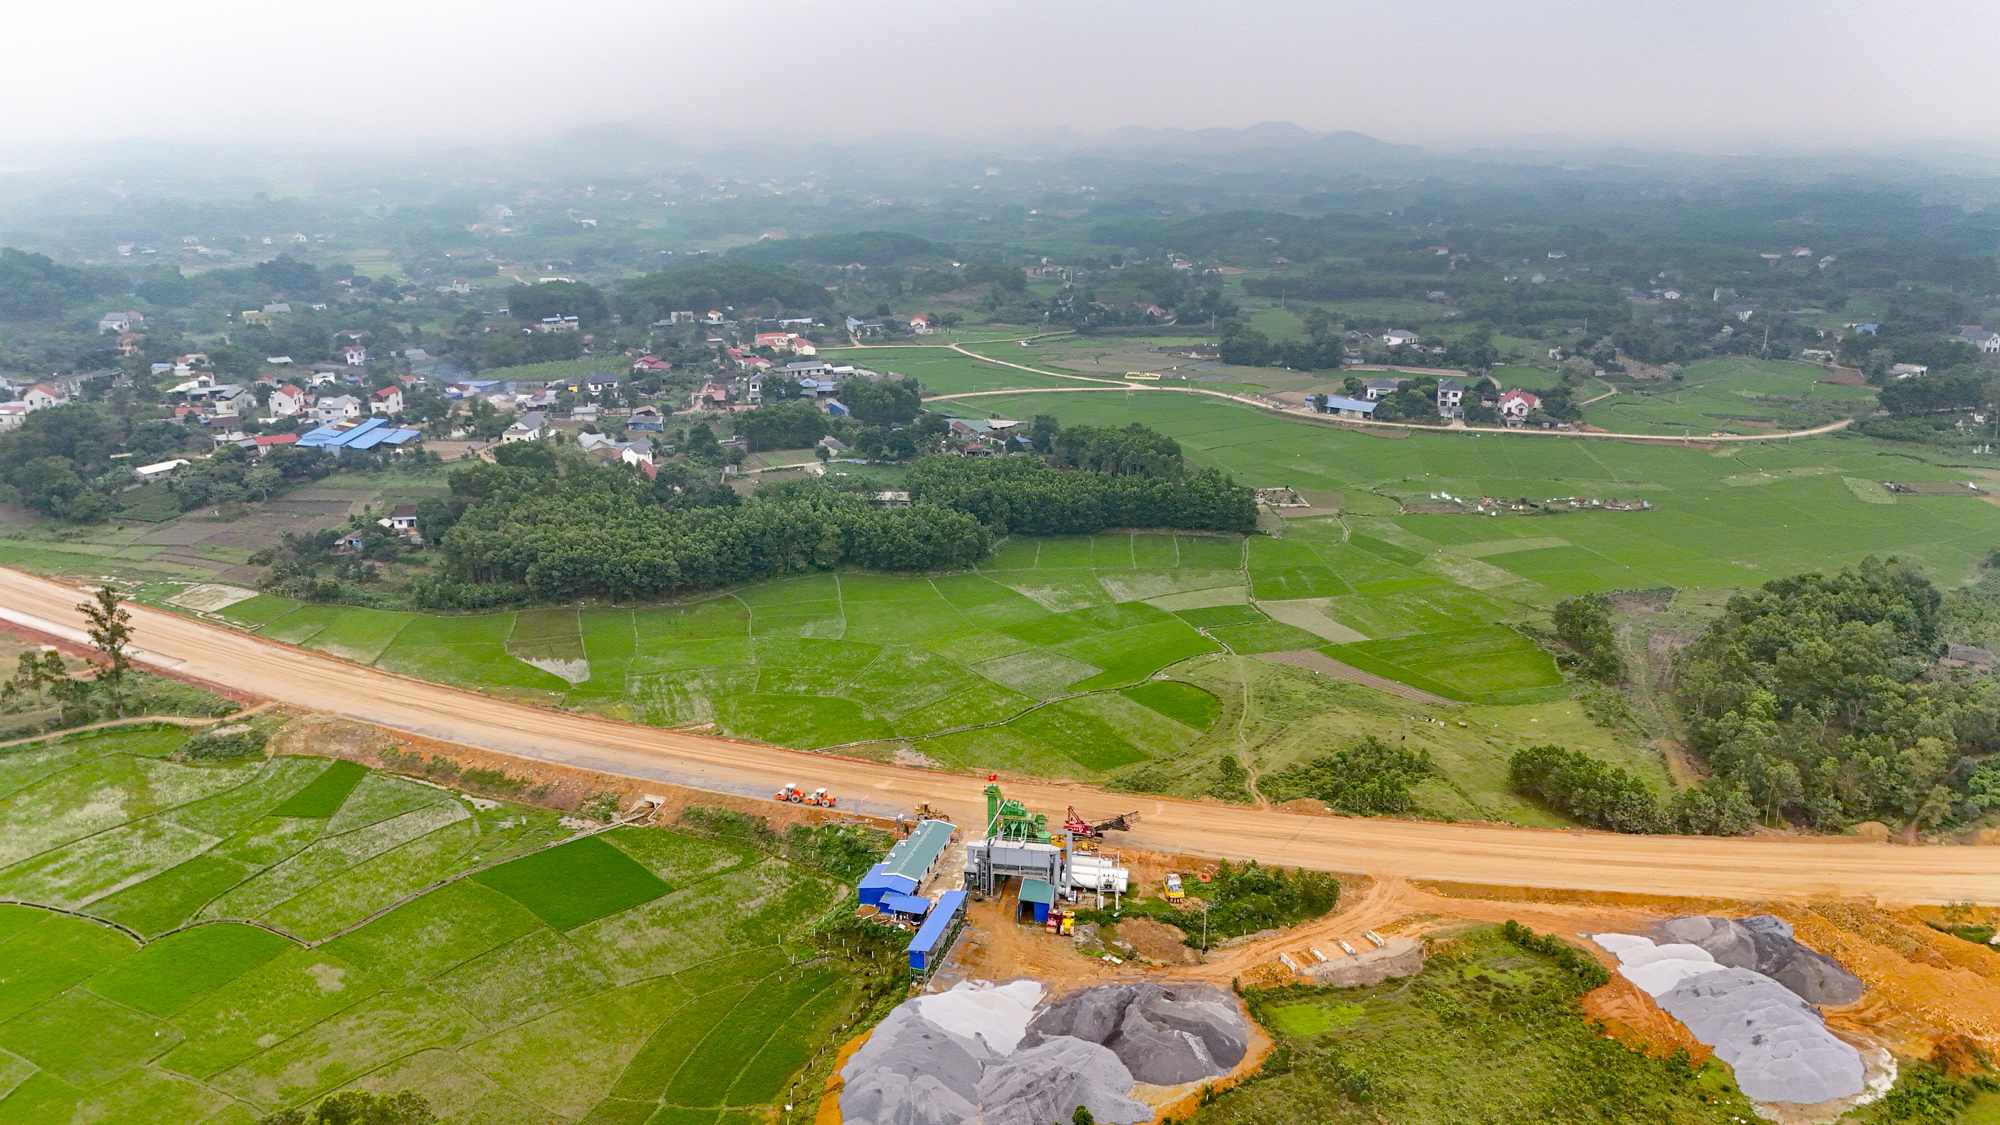 Khu vực sẽ trở thành Khu công nghiệp - Đô thị - Dịch vụ lớn nhất tỉnh Thái Nguyên, gần bằng tổng diện tích khu công nghiệp toàn tỉnh hiện nay cộng lại- Ảnh 3.